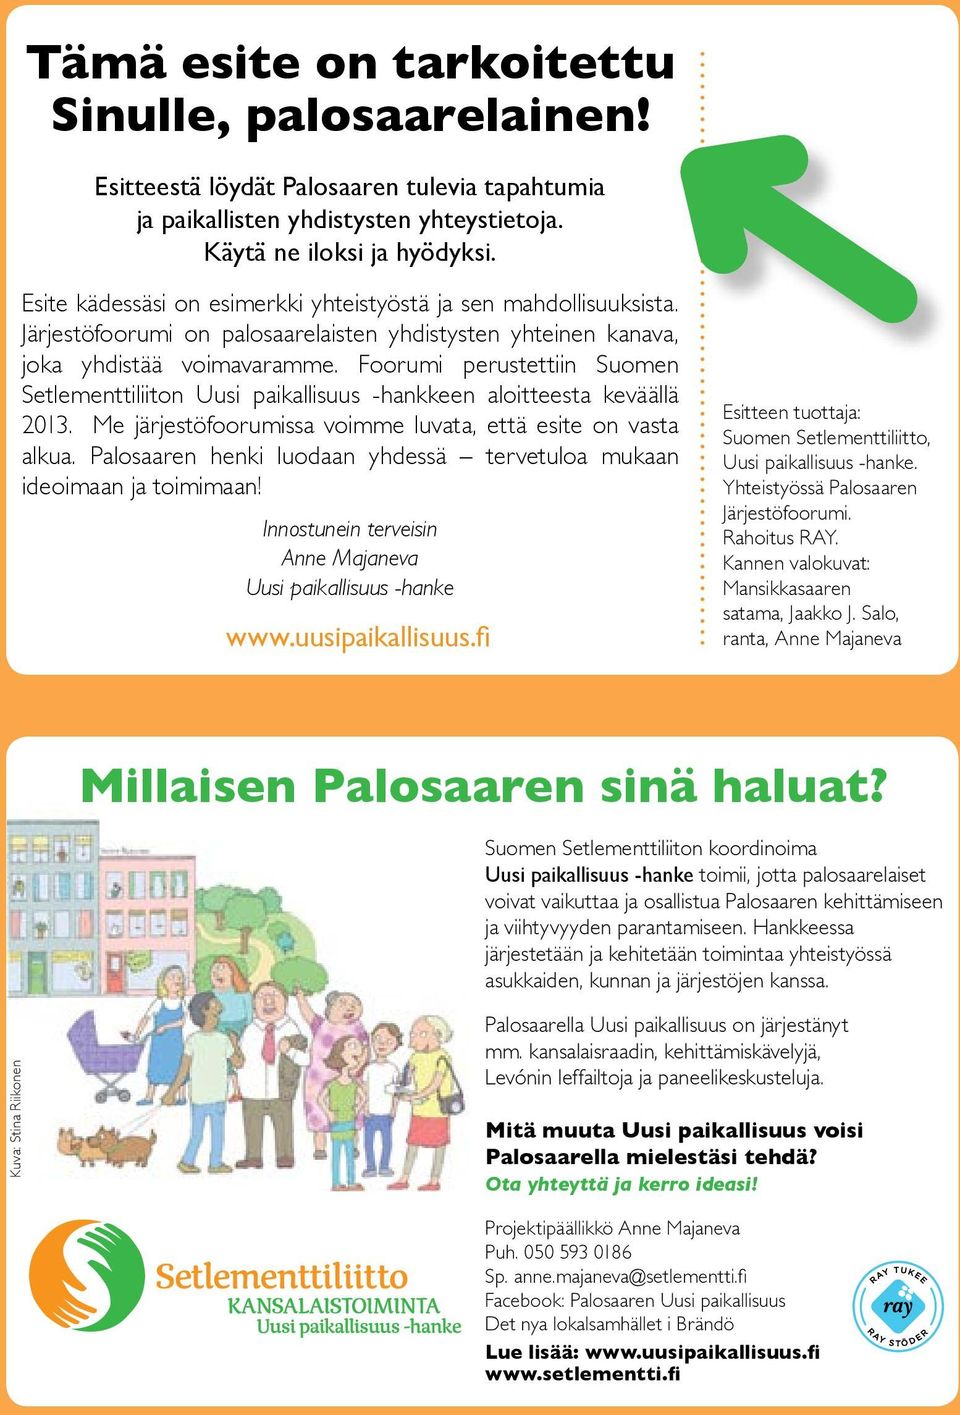 Foorumi perustettiin Suomen Setlementtiliiton Uusi paikallisuus -hankkeen aloitteesta keväällä 2013. Me järjestöfoorumissa voimme luvata, että esite on vasta alkua.